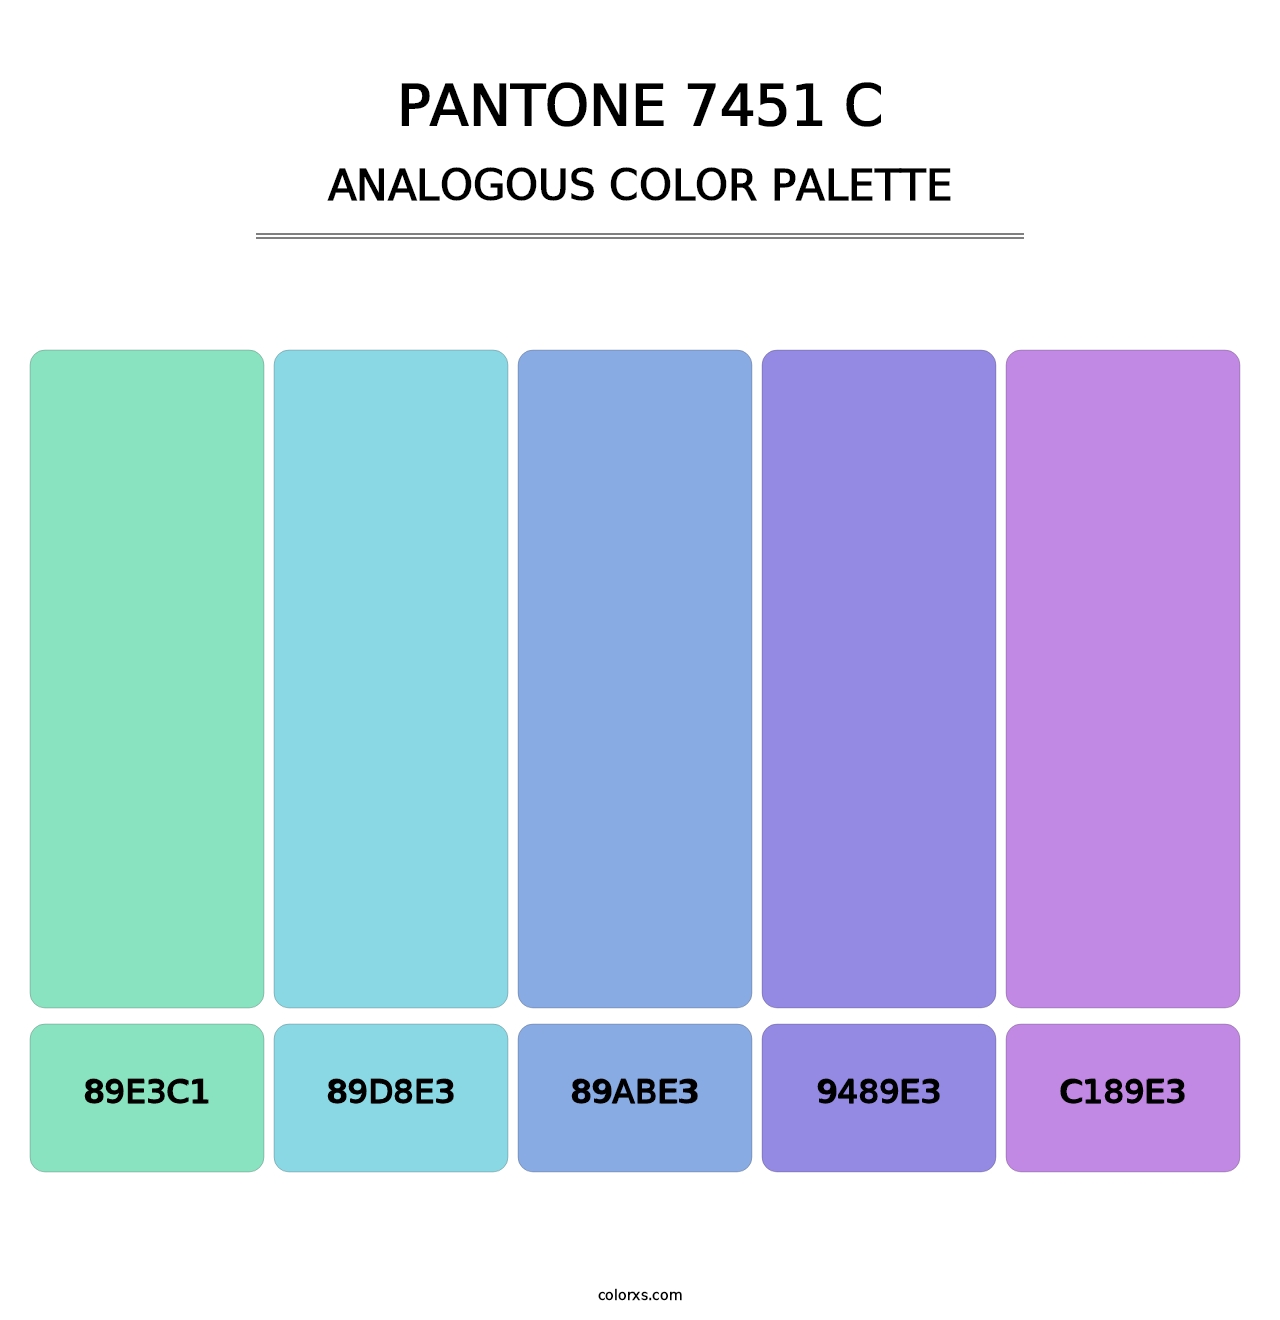 PANTONE 7451 C - Analogous Color Palette